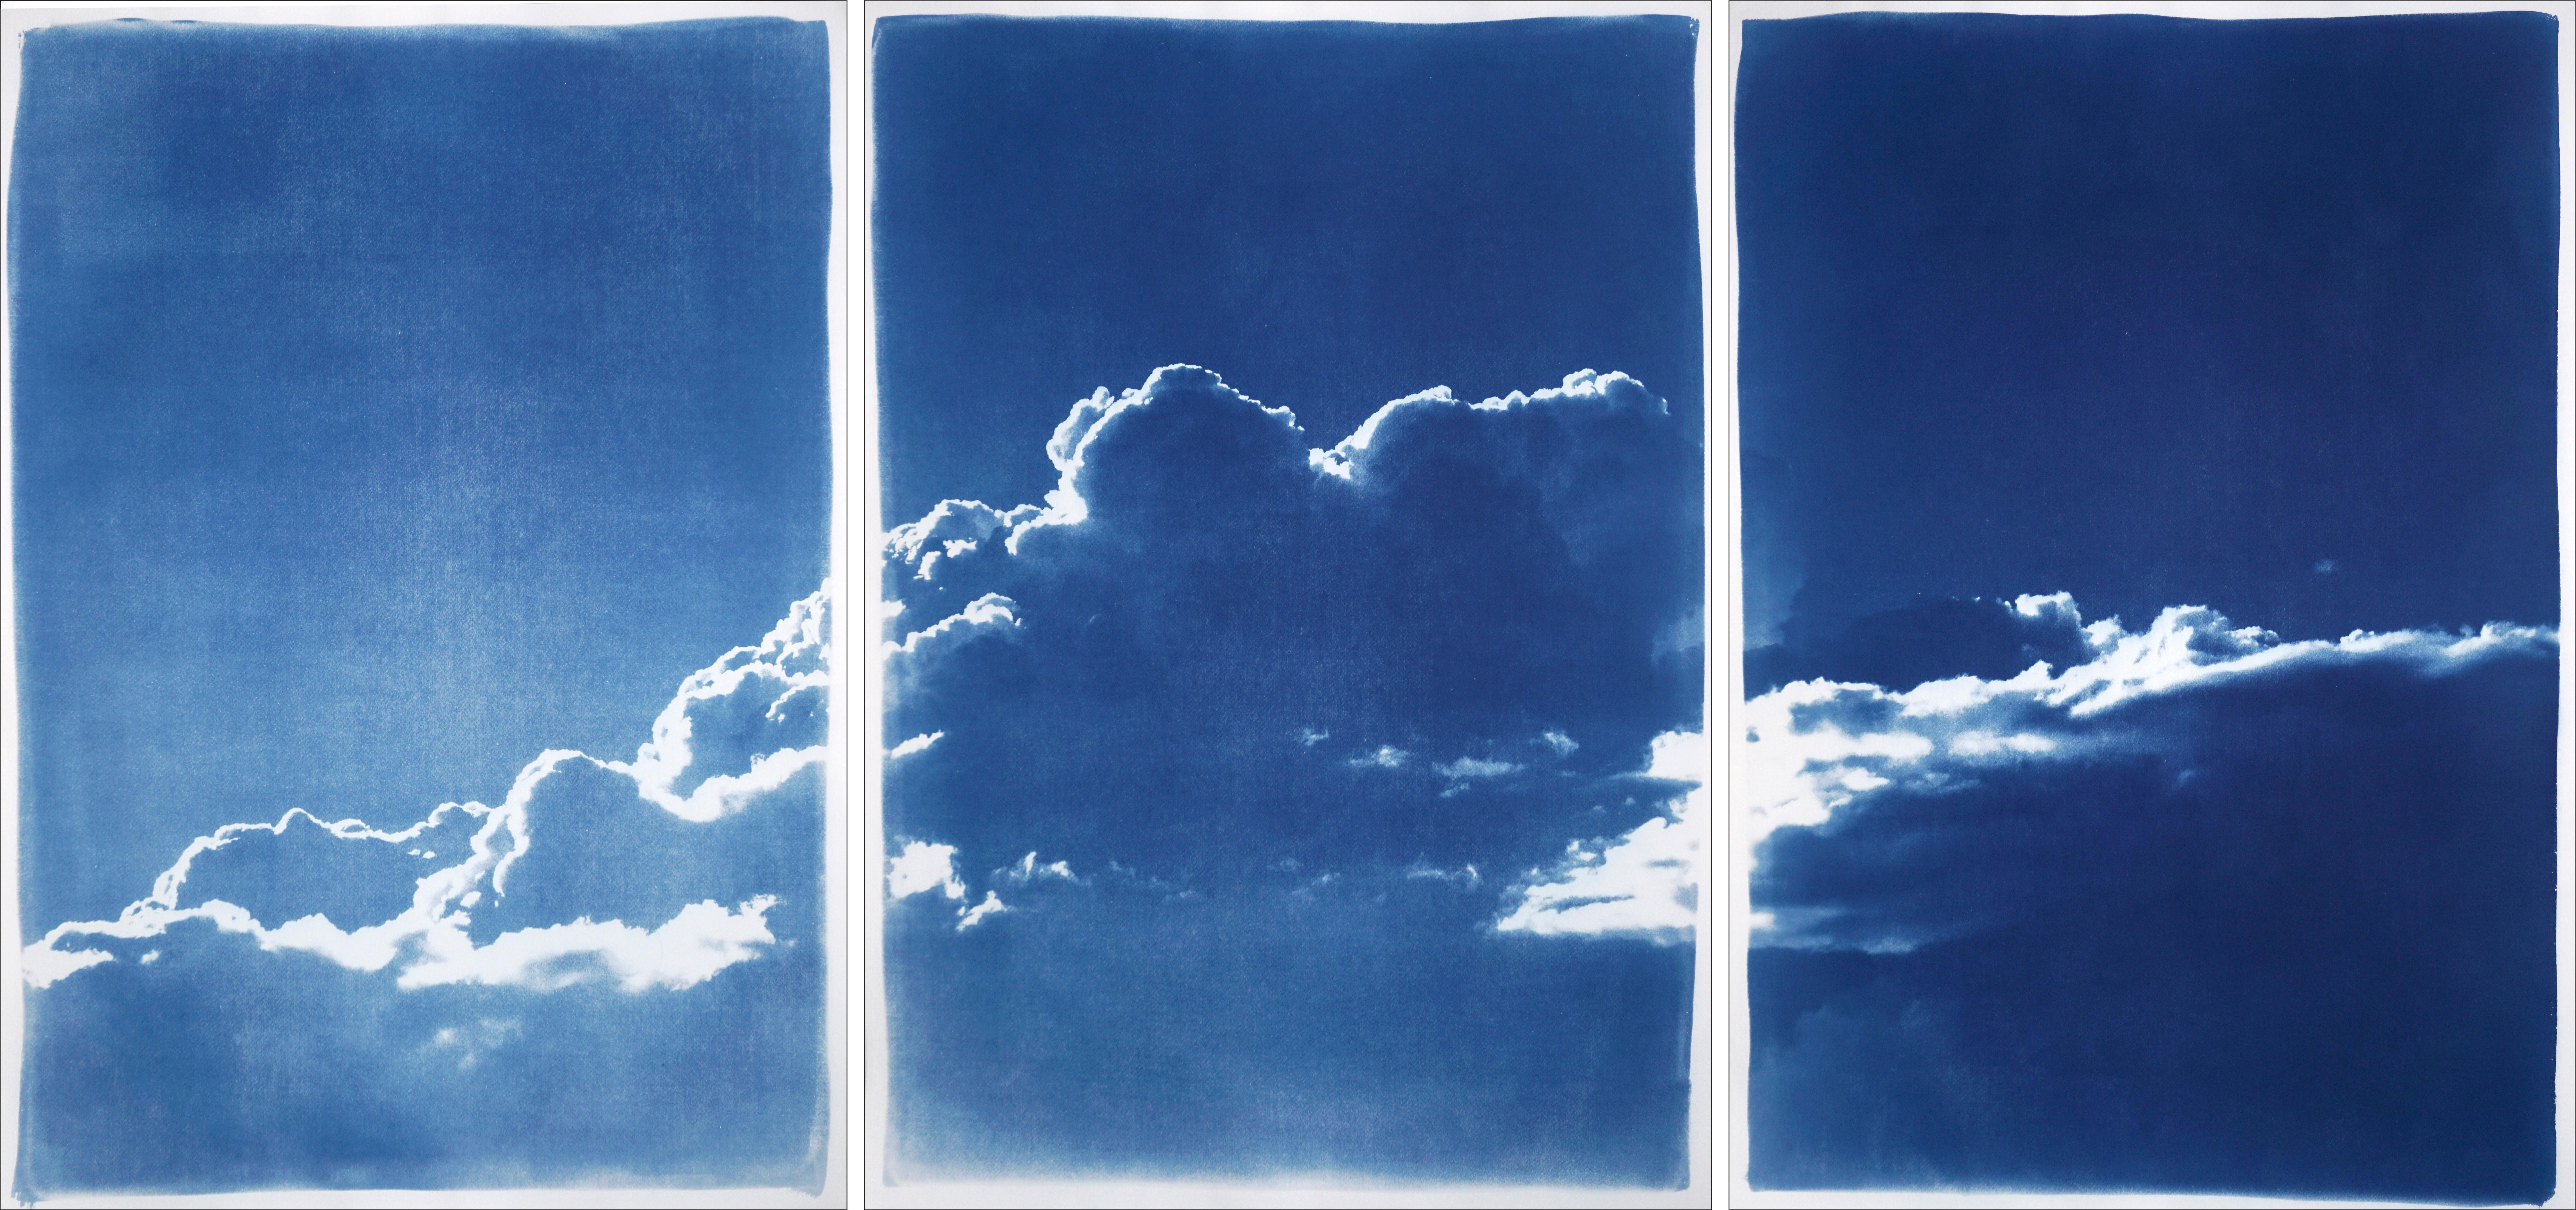 Kind of Cyan Landscape Painting – Serene Cloudy Sky Triptychon in Blau, entspannte Himmelslandschaft, mehrteiliger blauer Druck